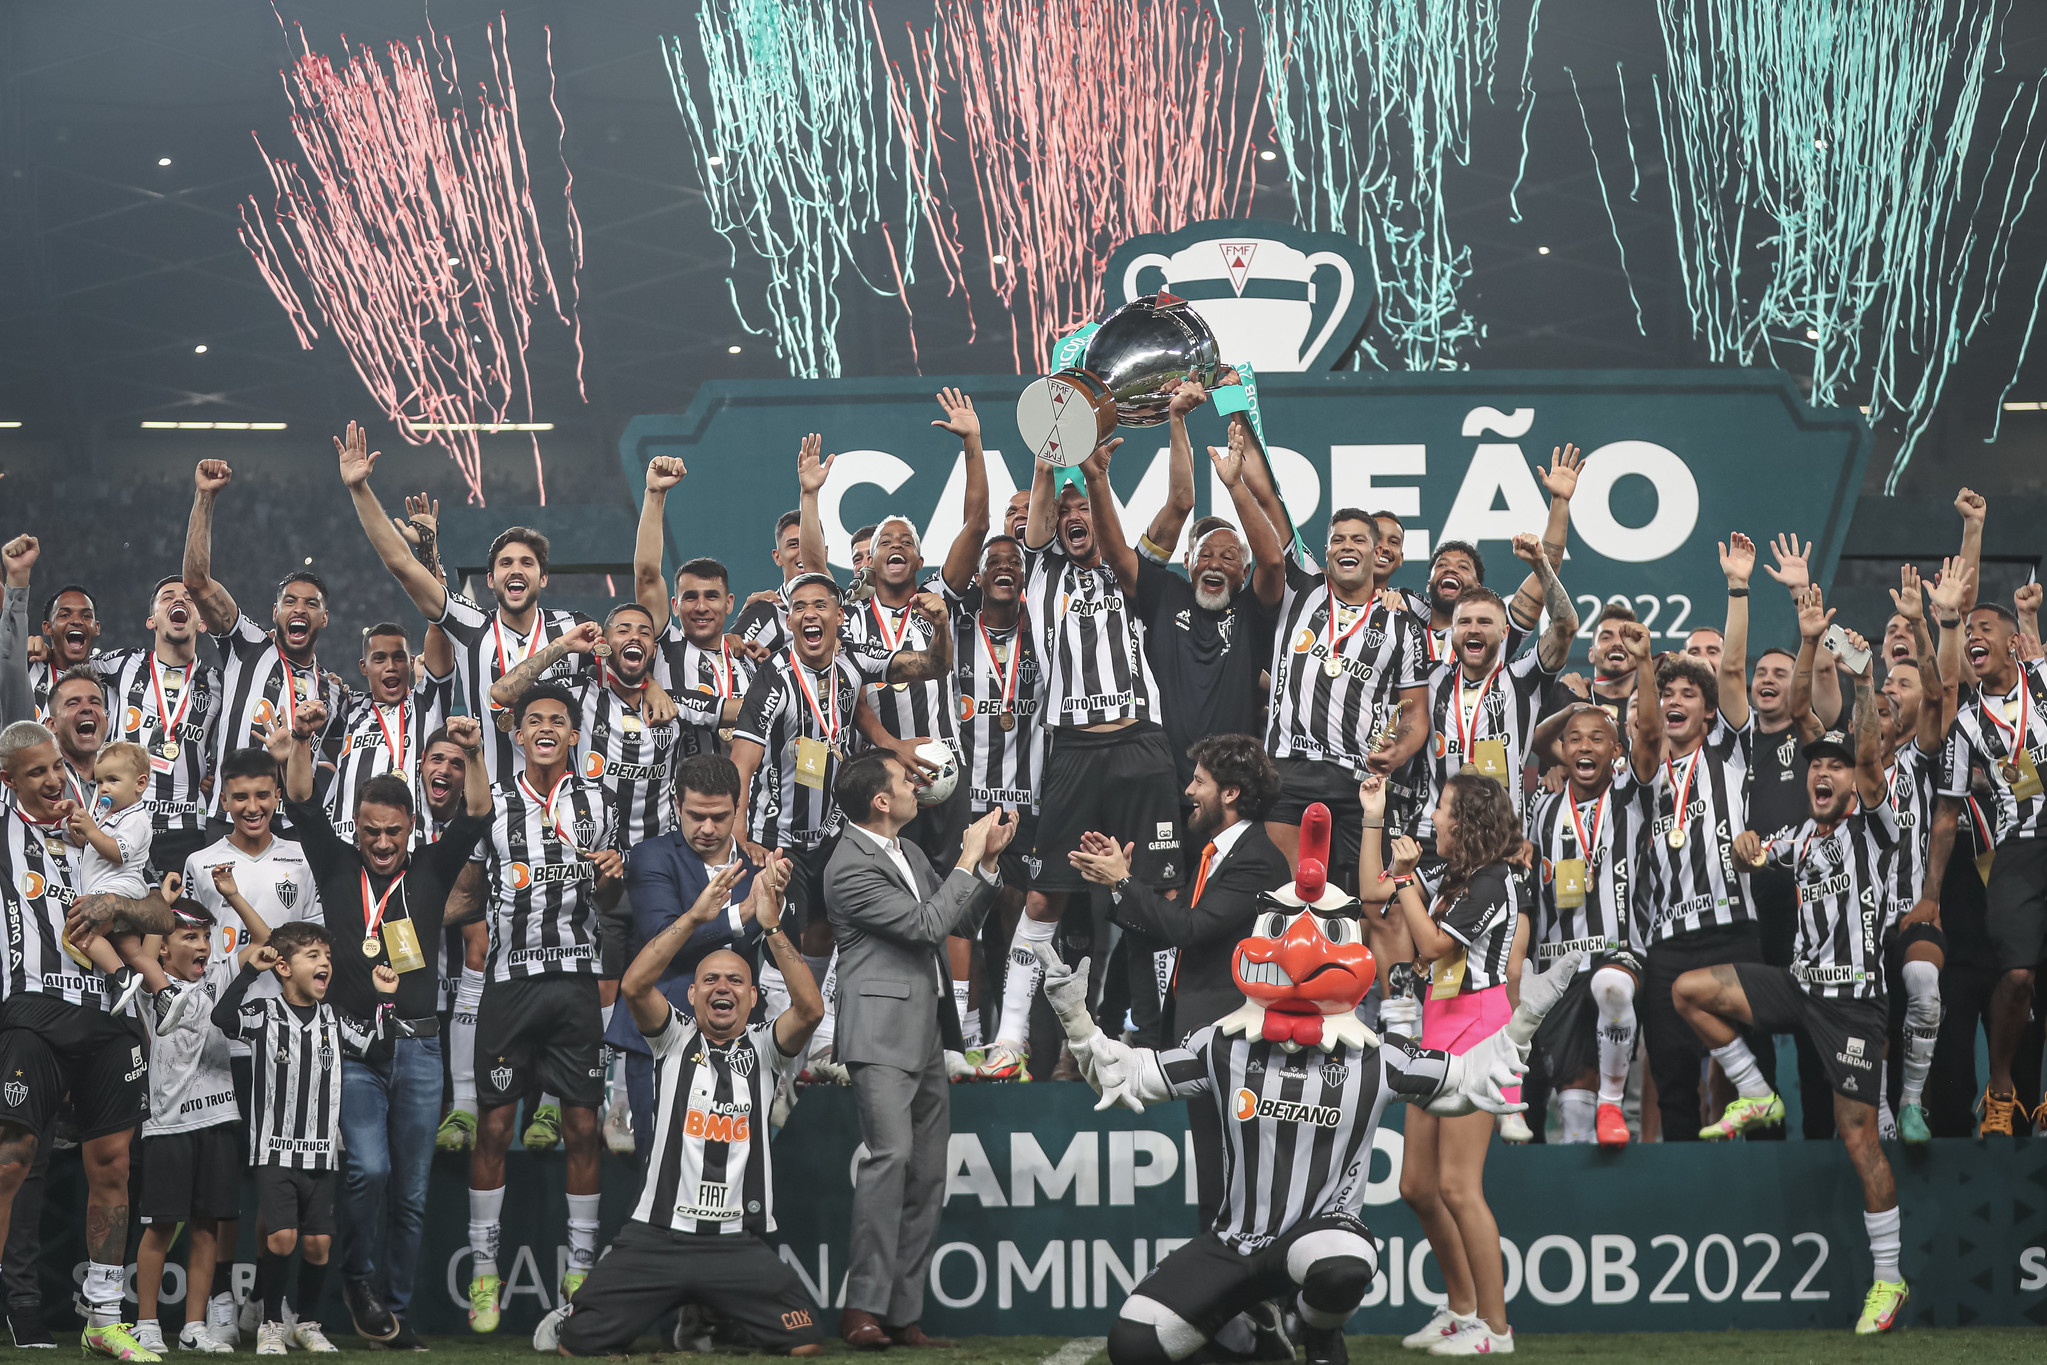 Clube Atlético Mineiro Campeonato Mineiro Belo Horizonte